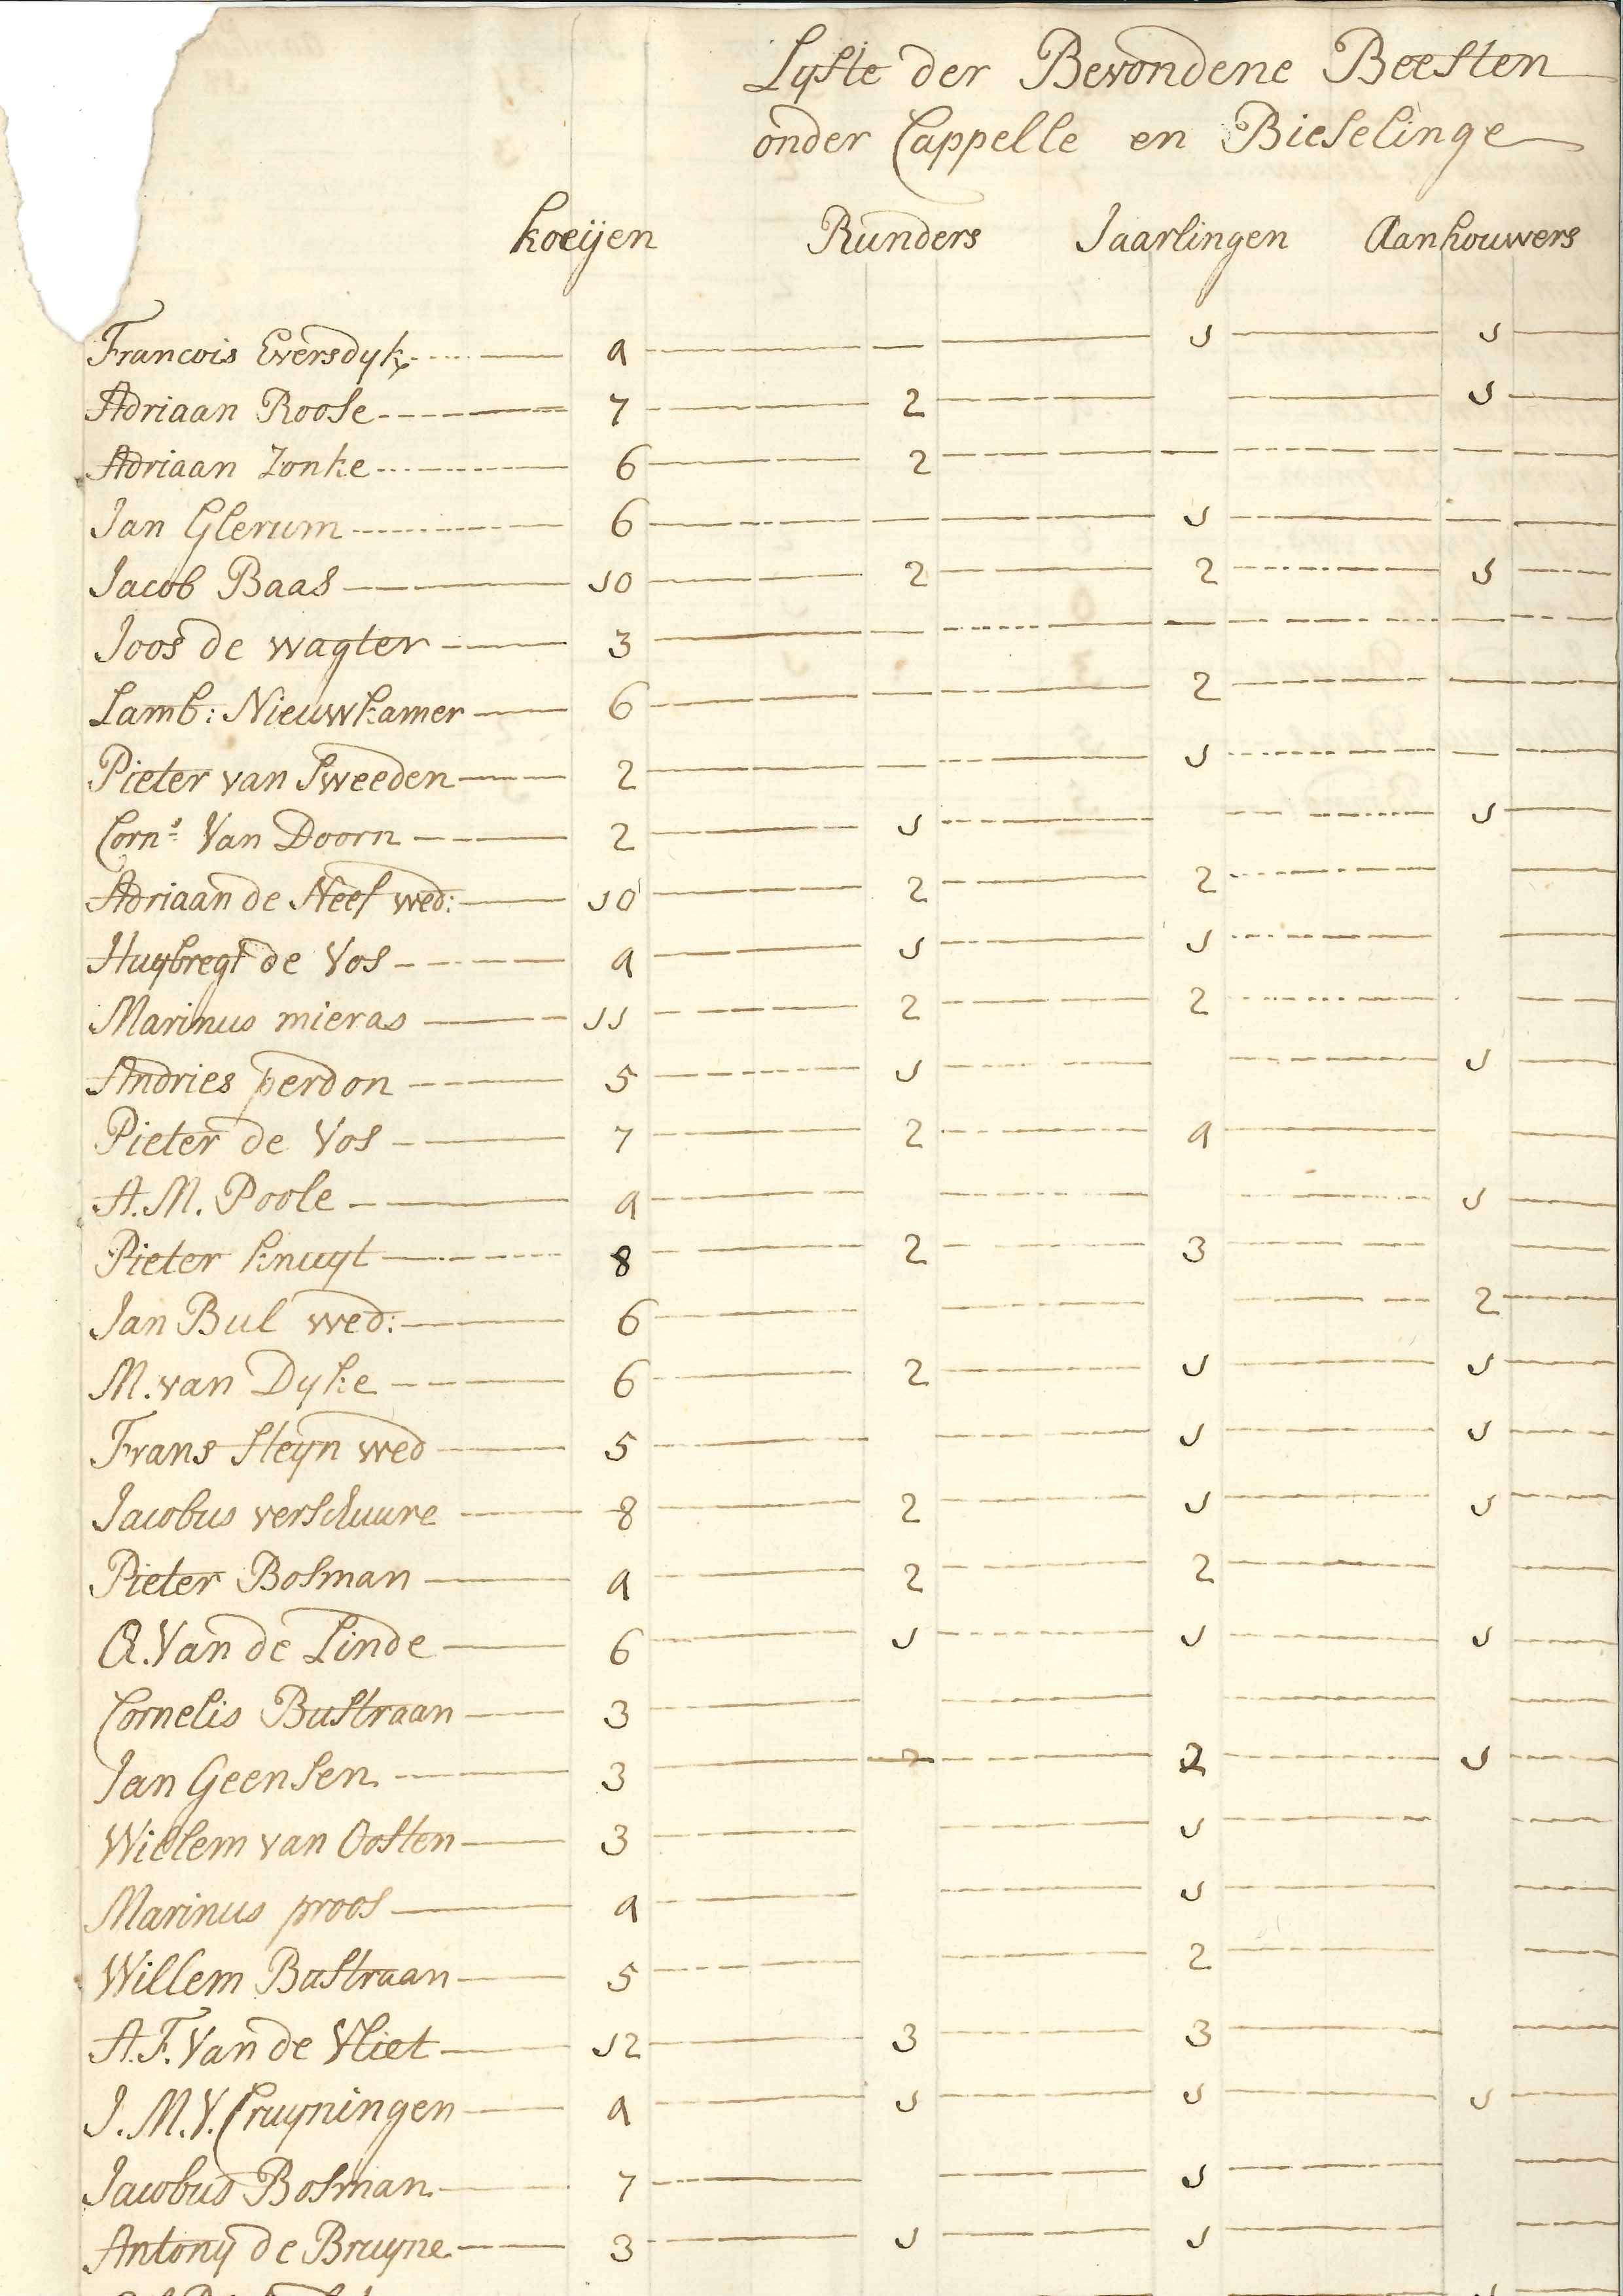 Inventarisatie van koeien te Kapelle en Biezelinge, 1779.